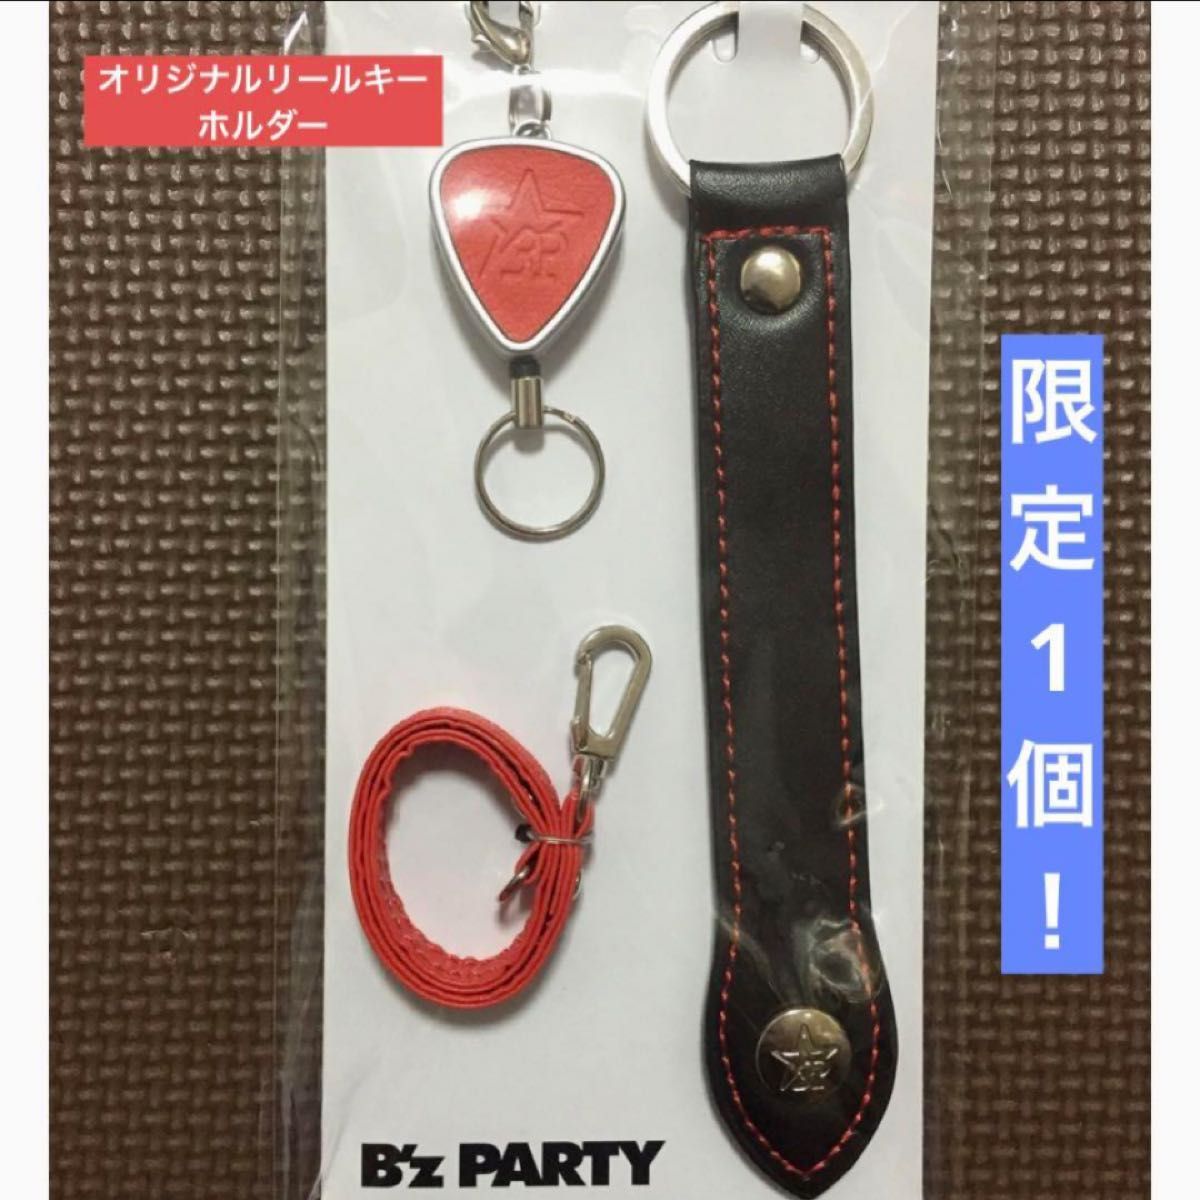 ☆限定☆B’z PARTY FC 限定記念品 オリジナル リールキーホルダー